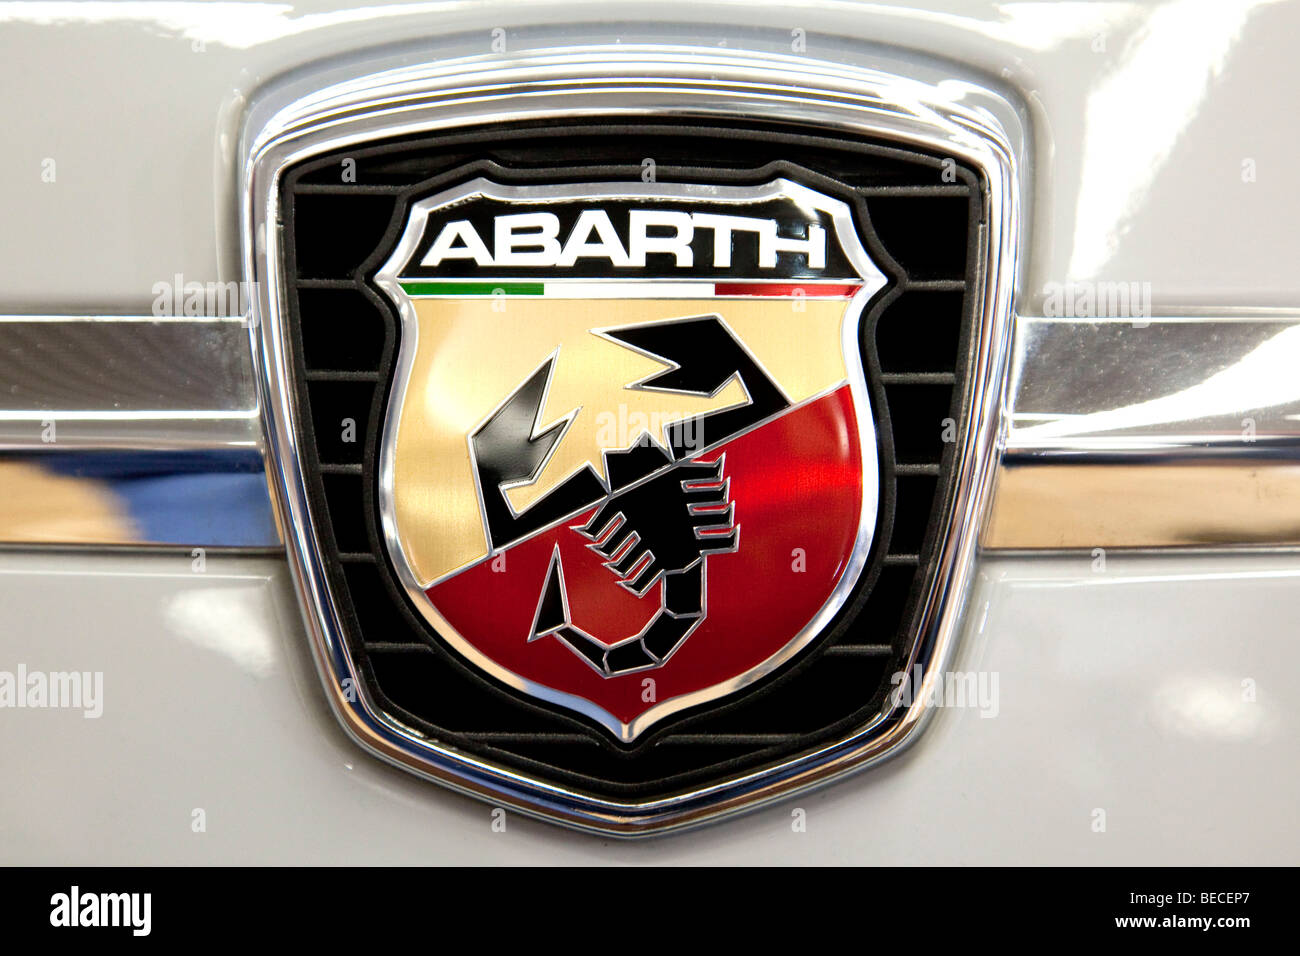 Fiat Abarth emblème sur une voiture Banque D'Images